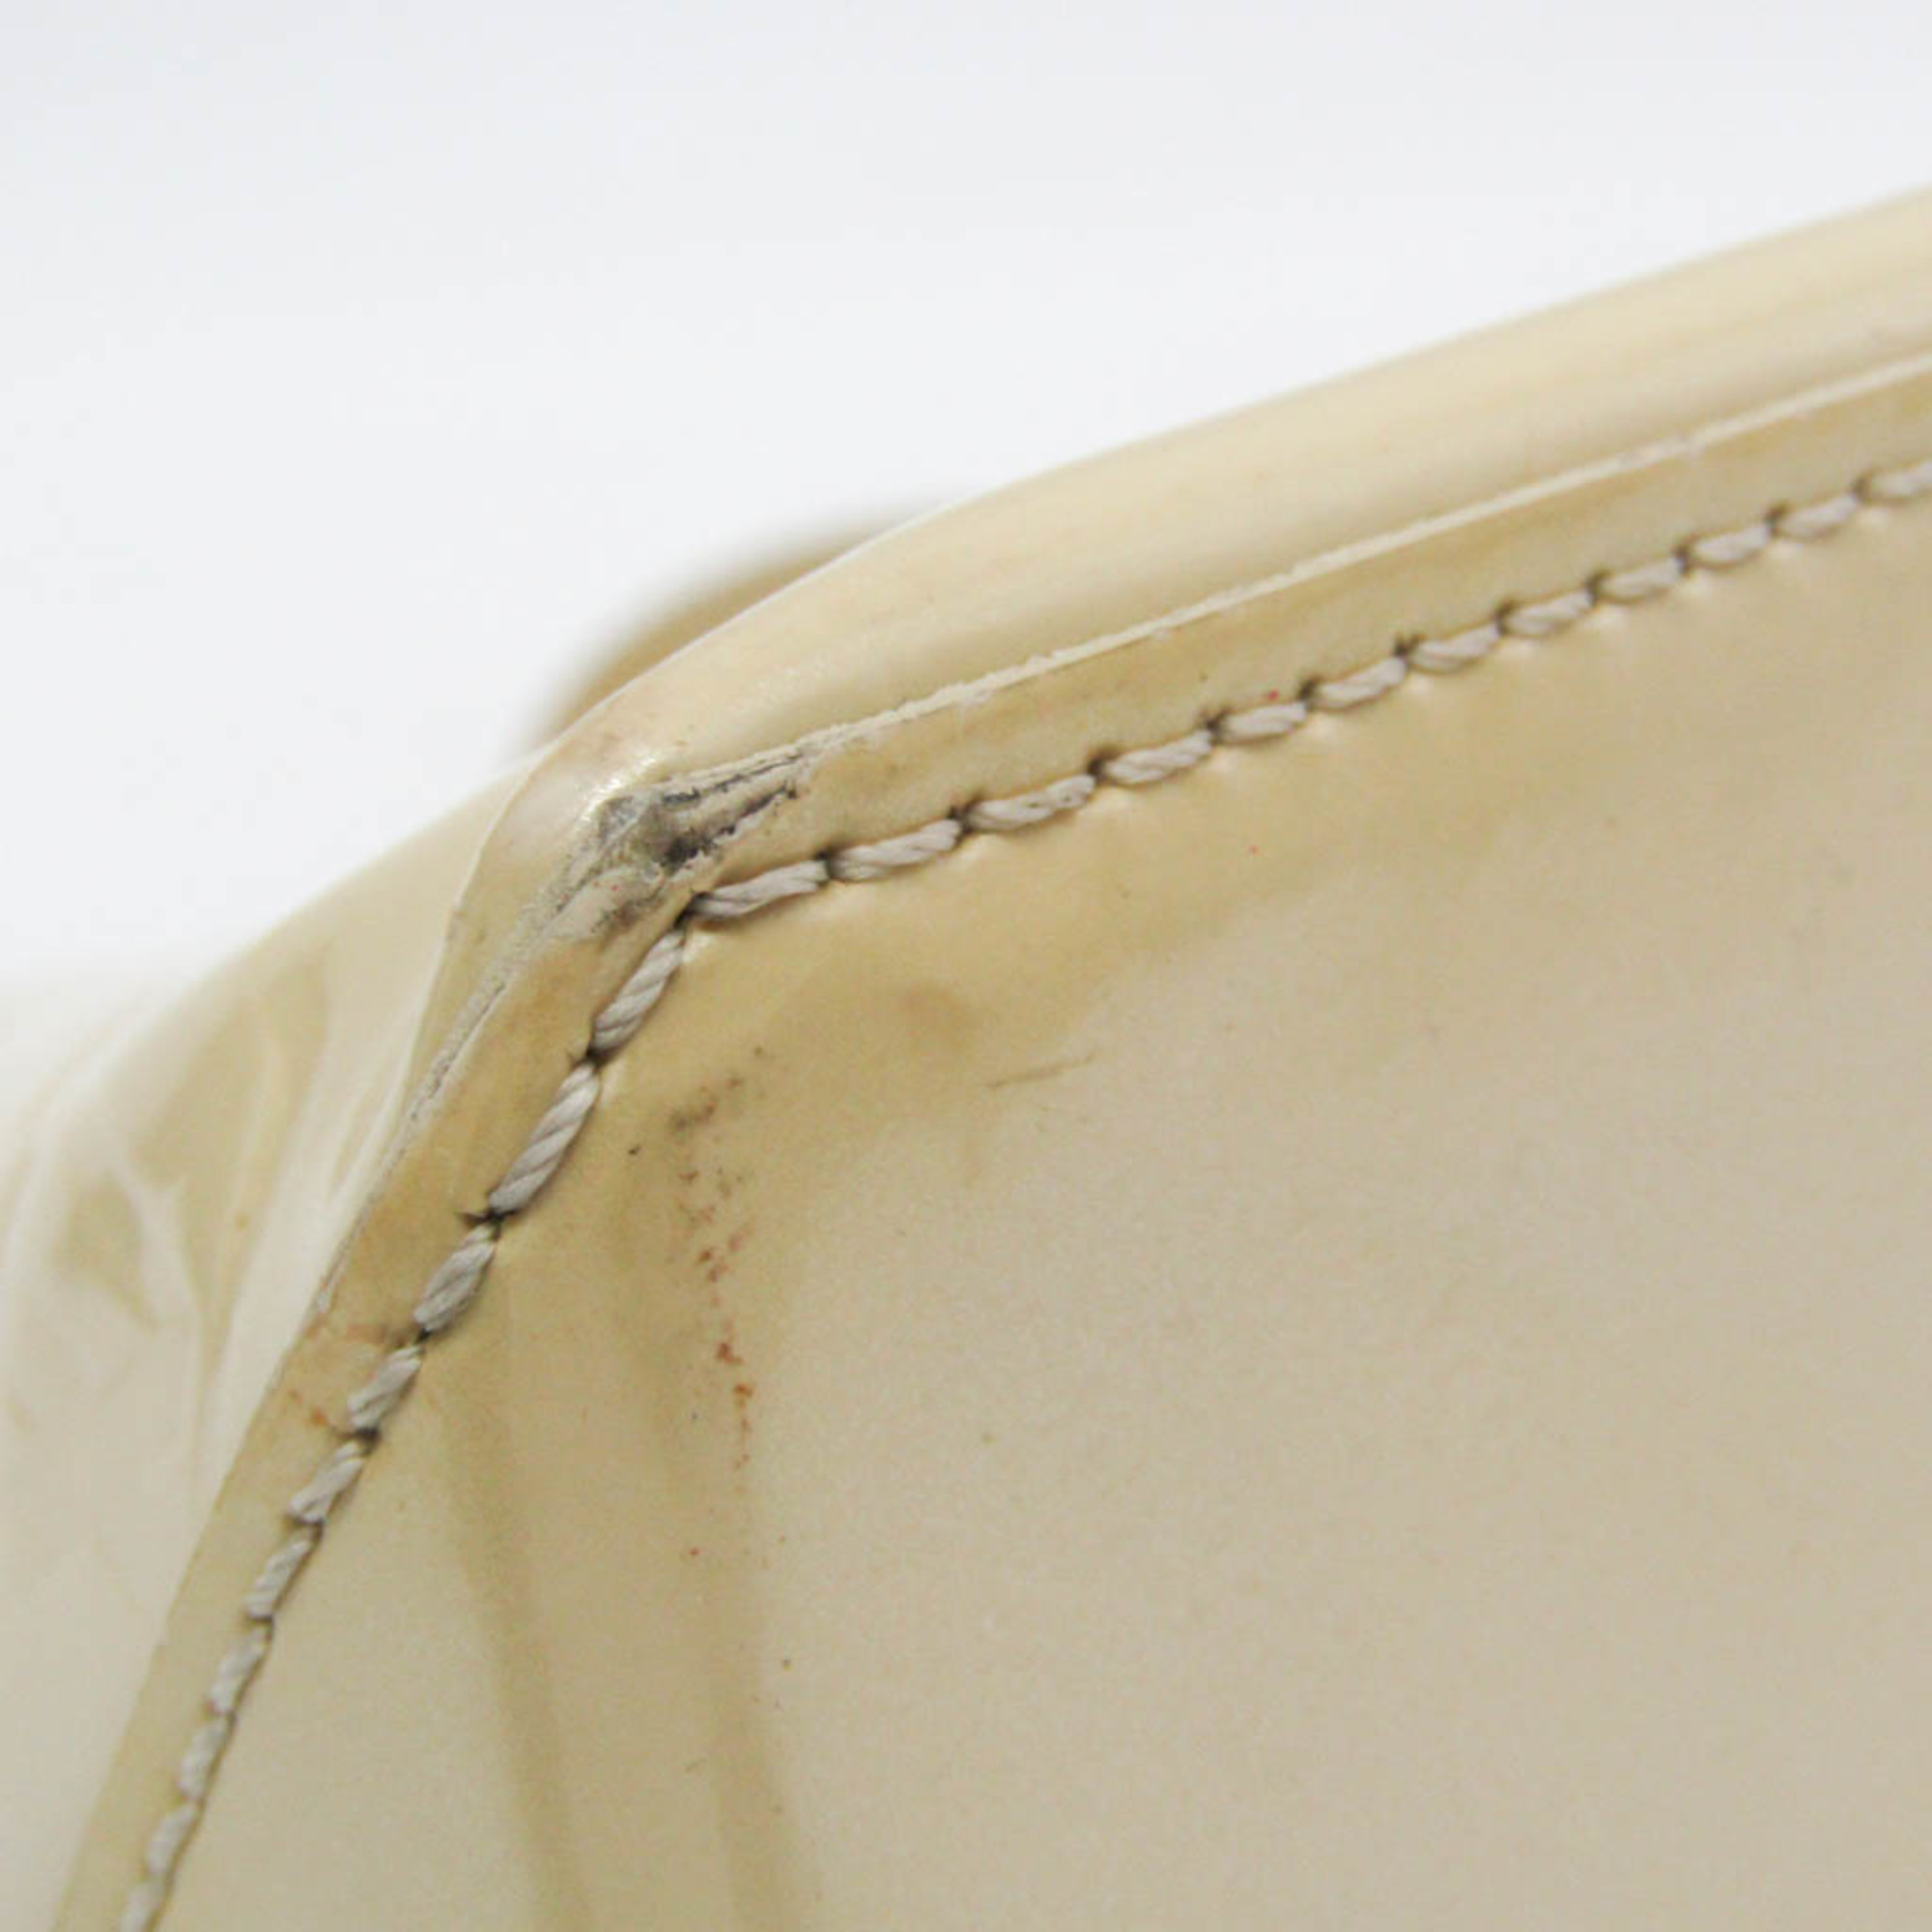 Louis Vuitton Monogram Vernis Wilshire PM M91452 Women's Handbag Blanc Corail